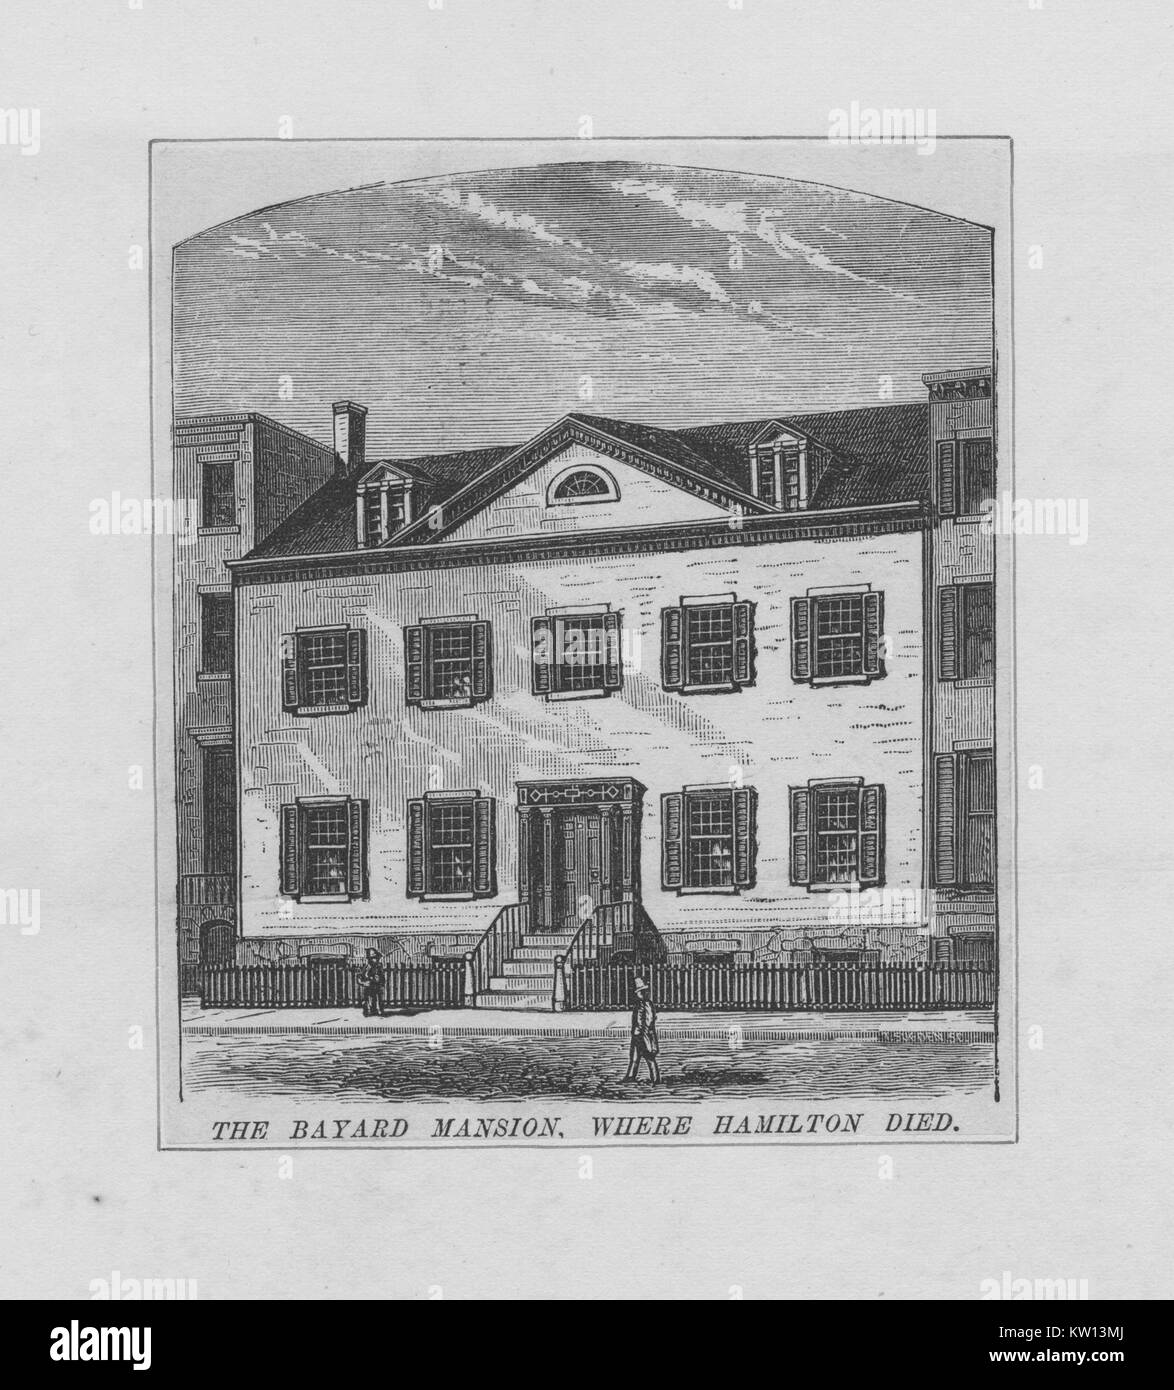 Incisione di Bayard Mansion, dove padre fondatore Alexander Hamilton è morto a seguito del suo duello con Aaron Burr, 1843. Dalla Biblioteca Pubblica di New York. Foto Stock